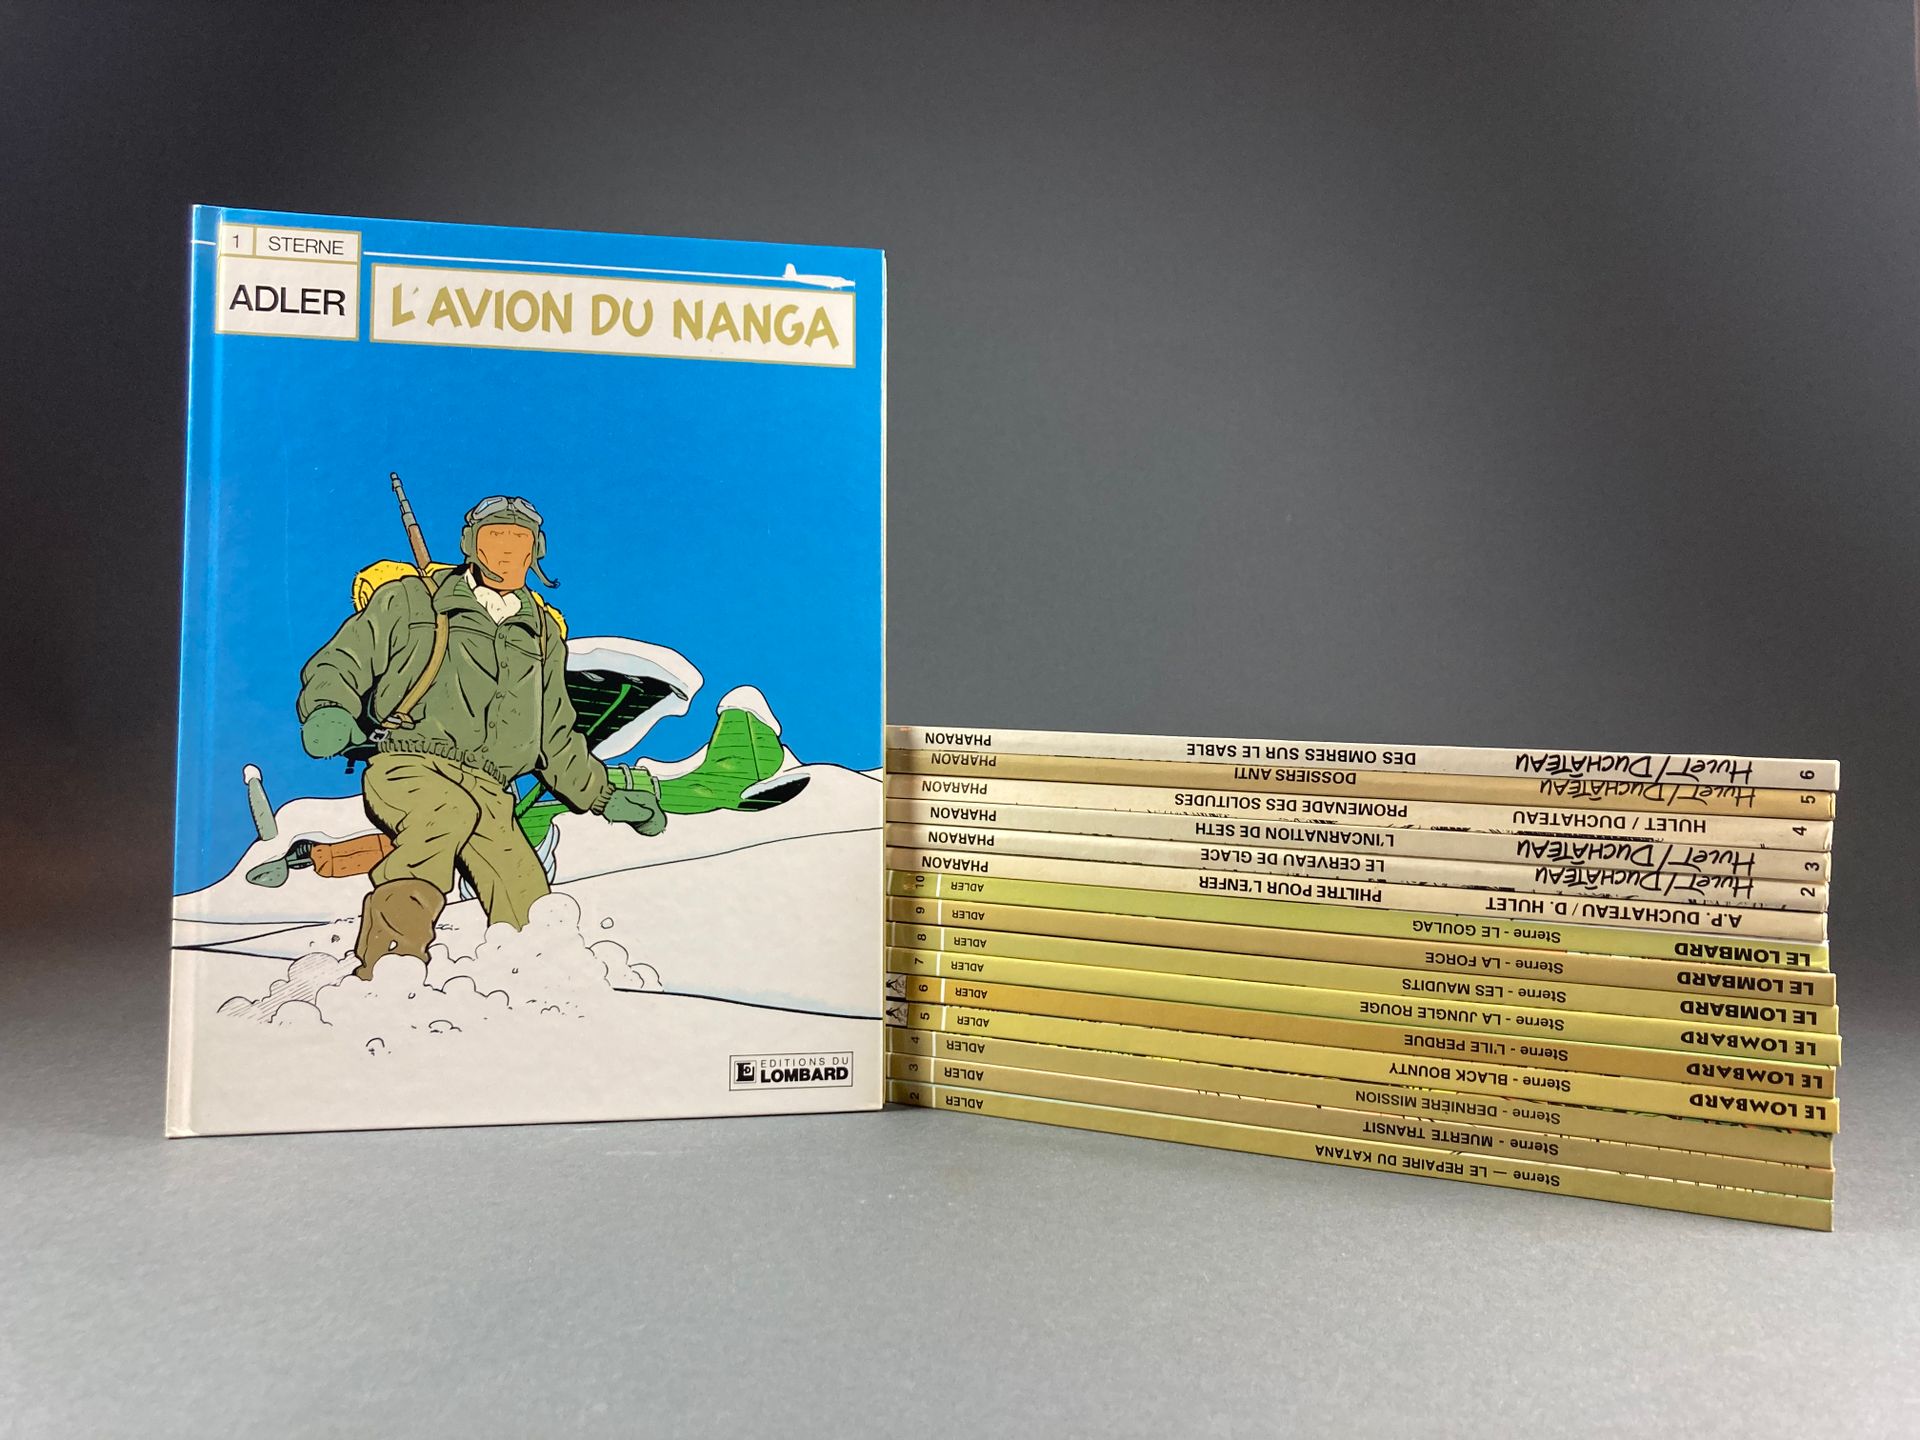 Sterne - Adler & Serie completa, volumi da 1 a 10, da L'avion du Nanga (1987) a &hellip;